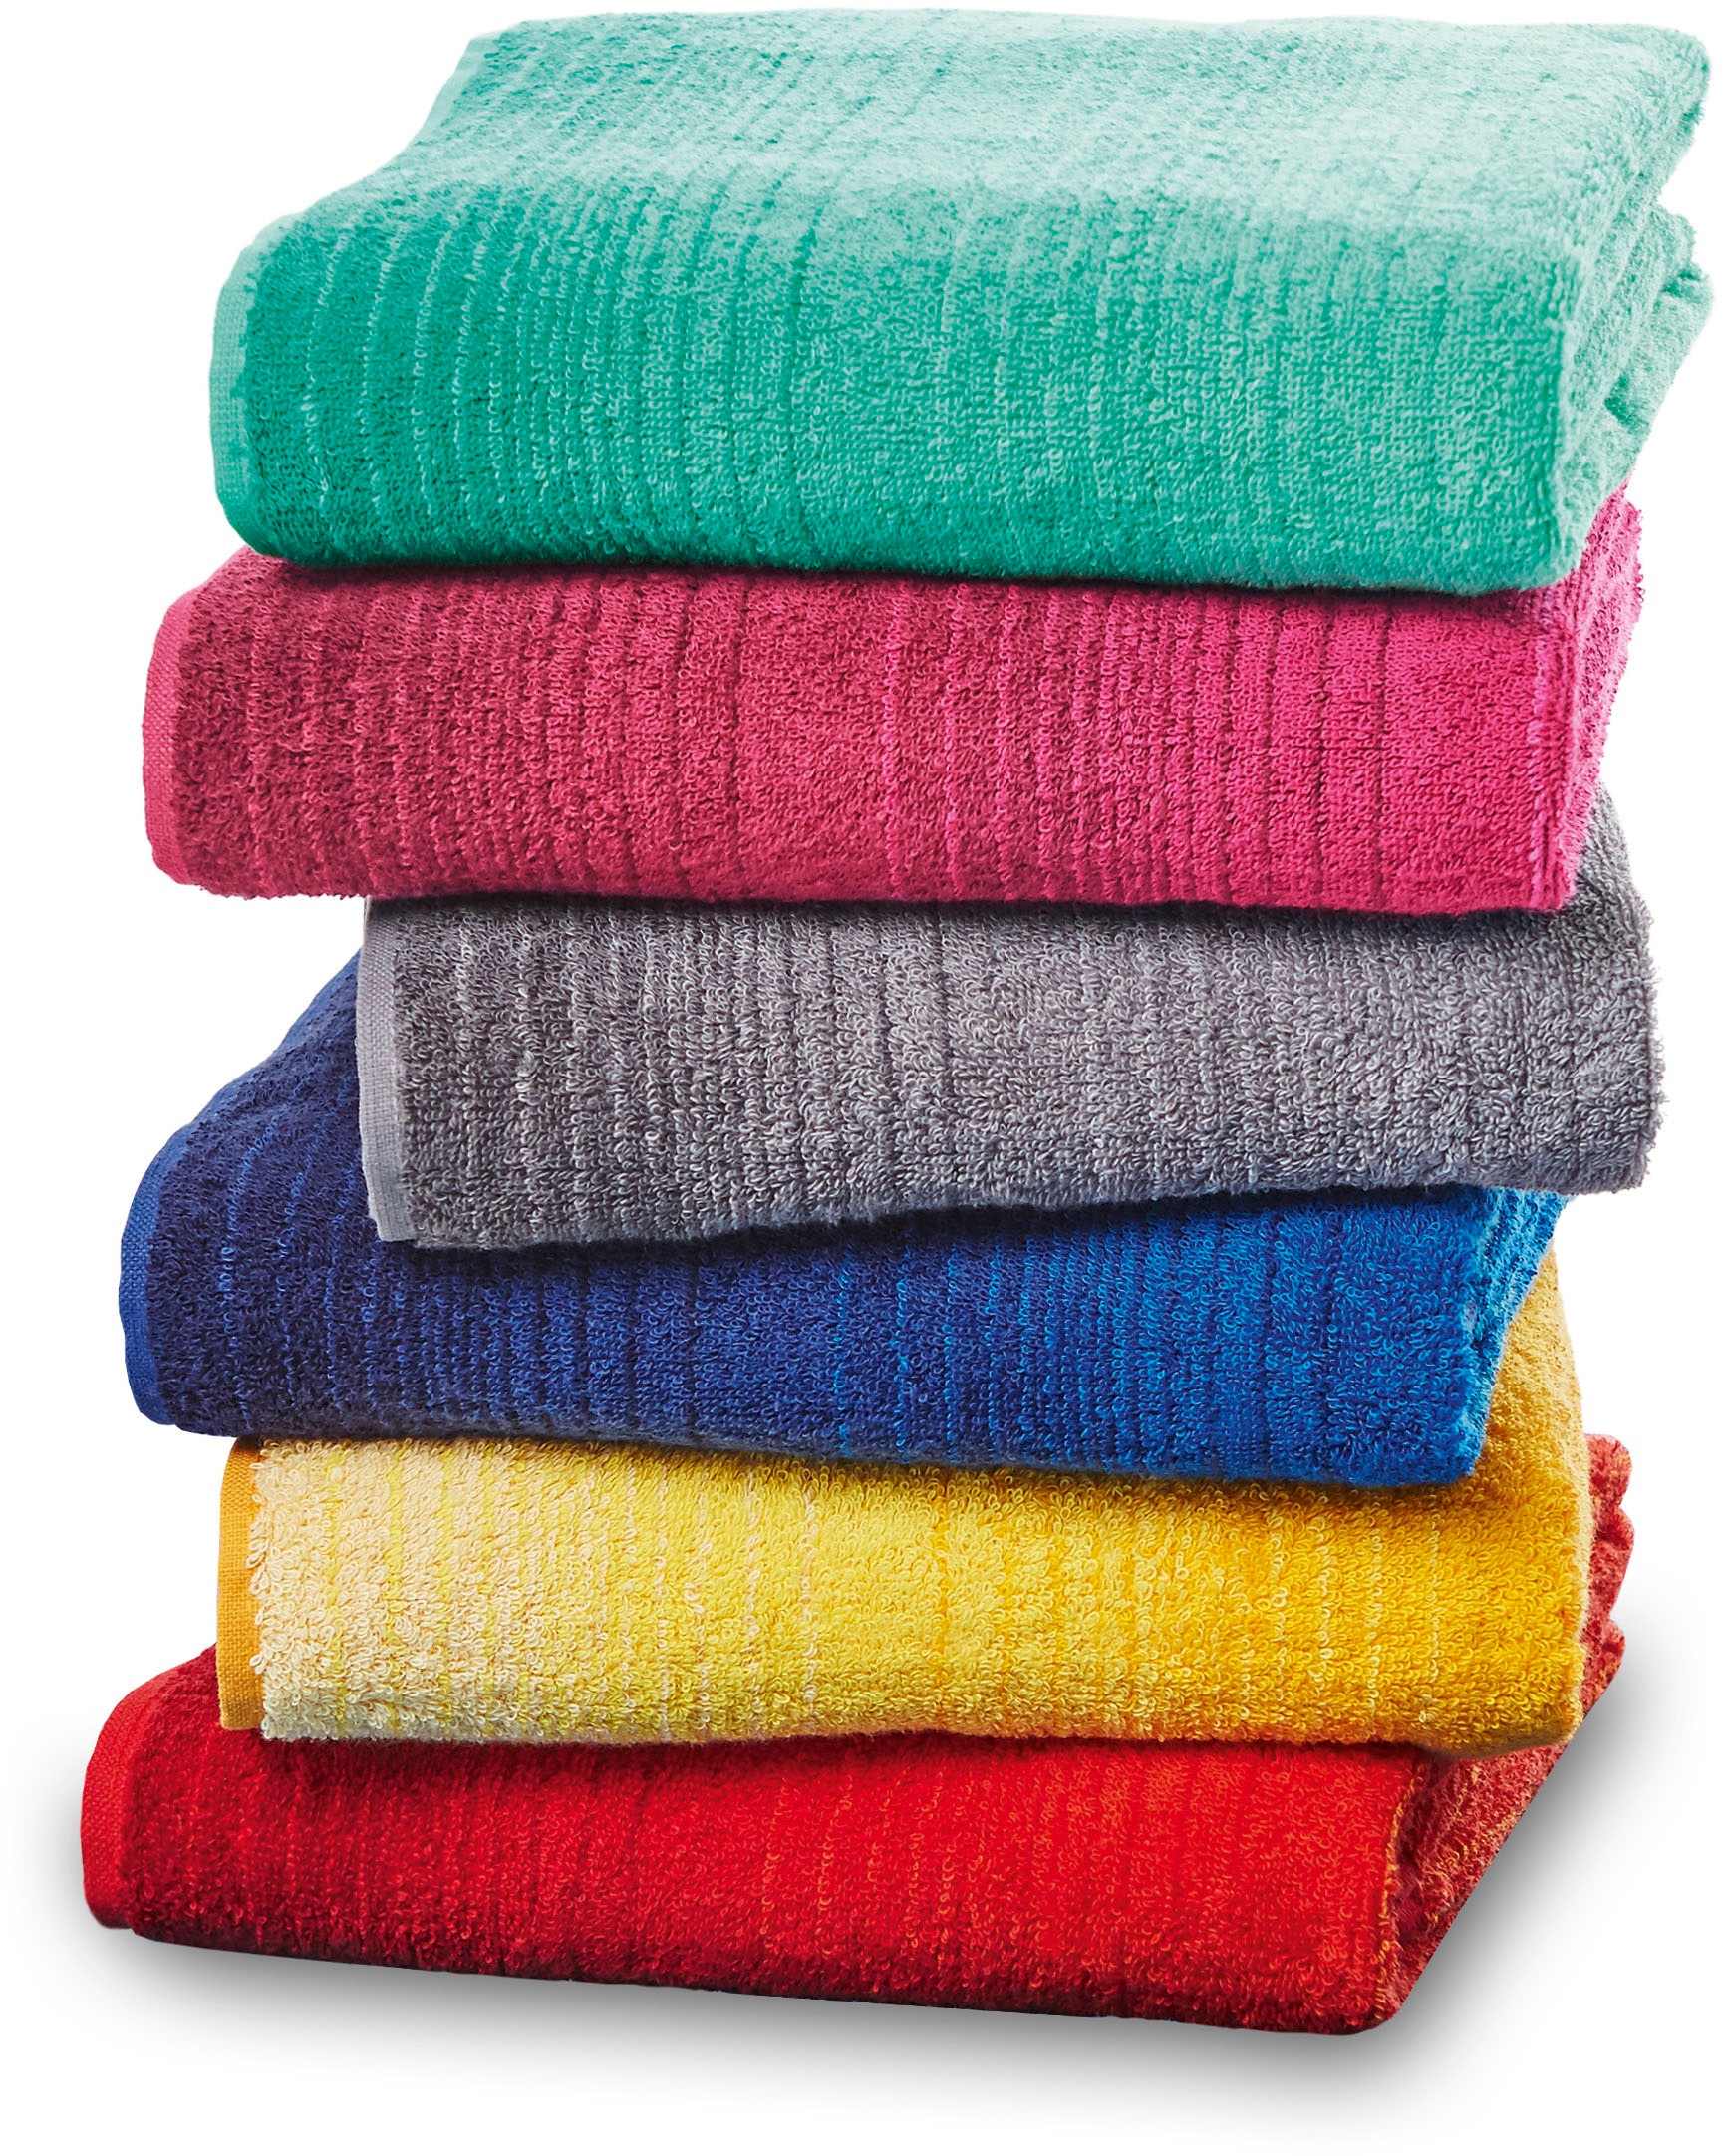 Handtuchsets in Türkis Preisvergleich | Moebel 24 | Handtuch-Sets